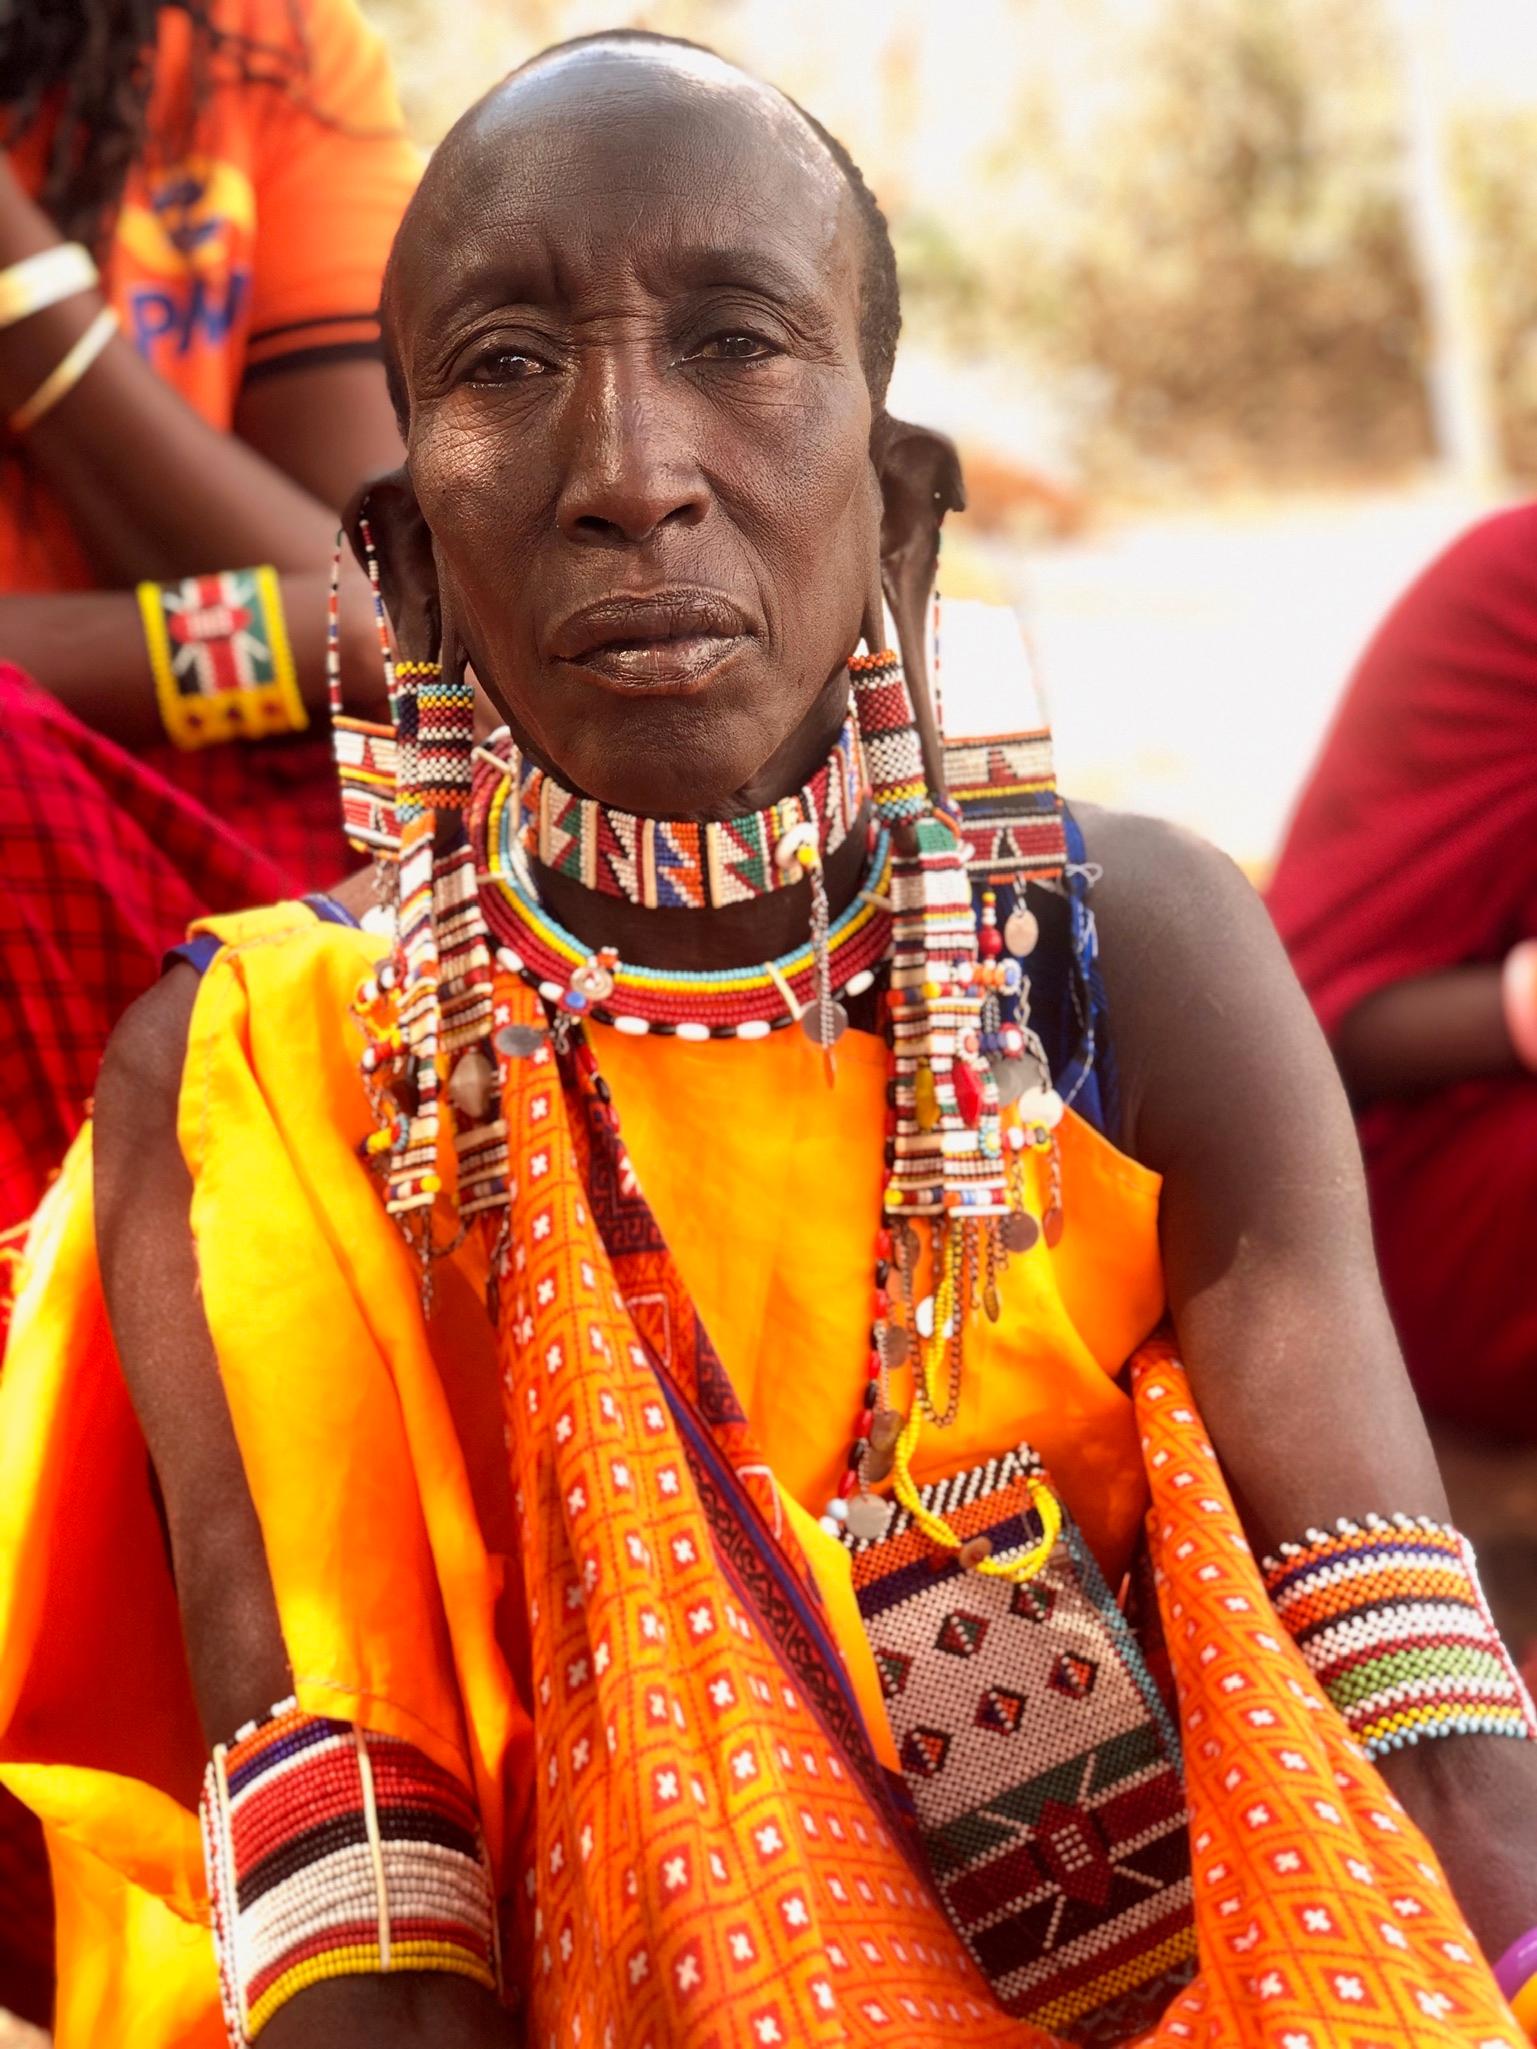 Barnmorskan Linti ene Sampue brukade vara stolt över att kunna utföra könsstympningar. Nu mår hon dåligt över den skada hon orsakat flickorna.